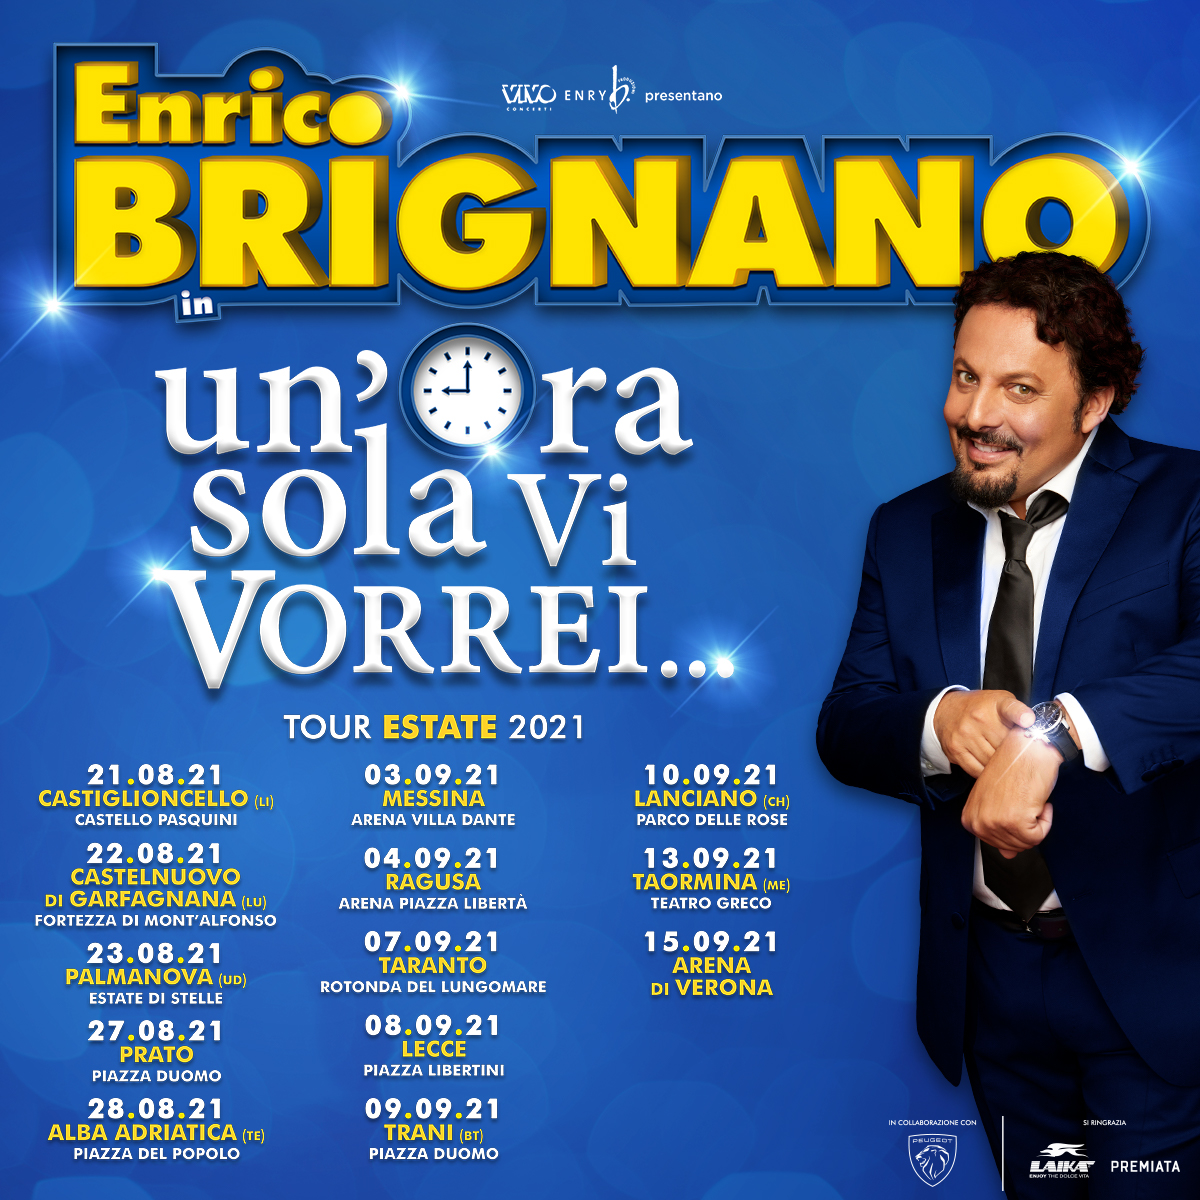 Enrico Brignano il 10 settembre 2021 a Lanciano